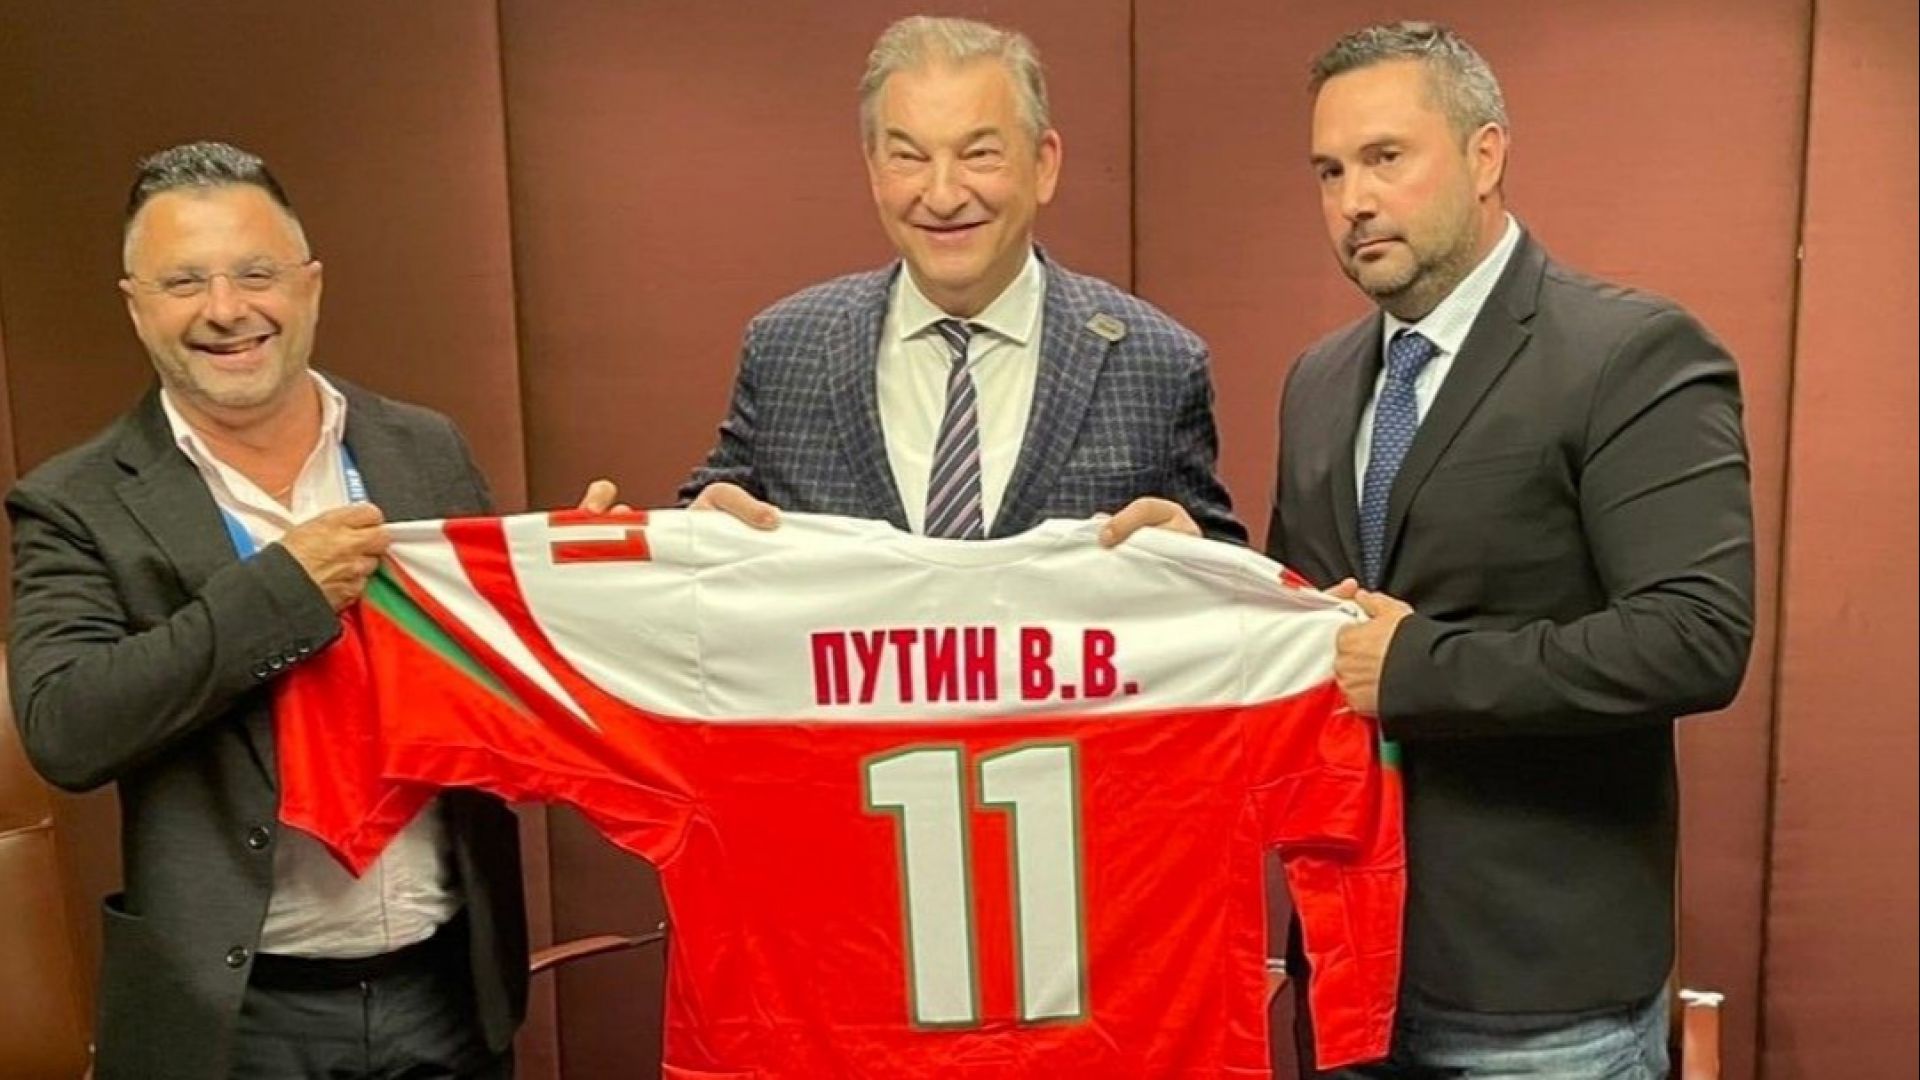 Хокейната федерация подписа договор за сътрудничество с Русия и подари екип на Путин